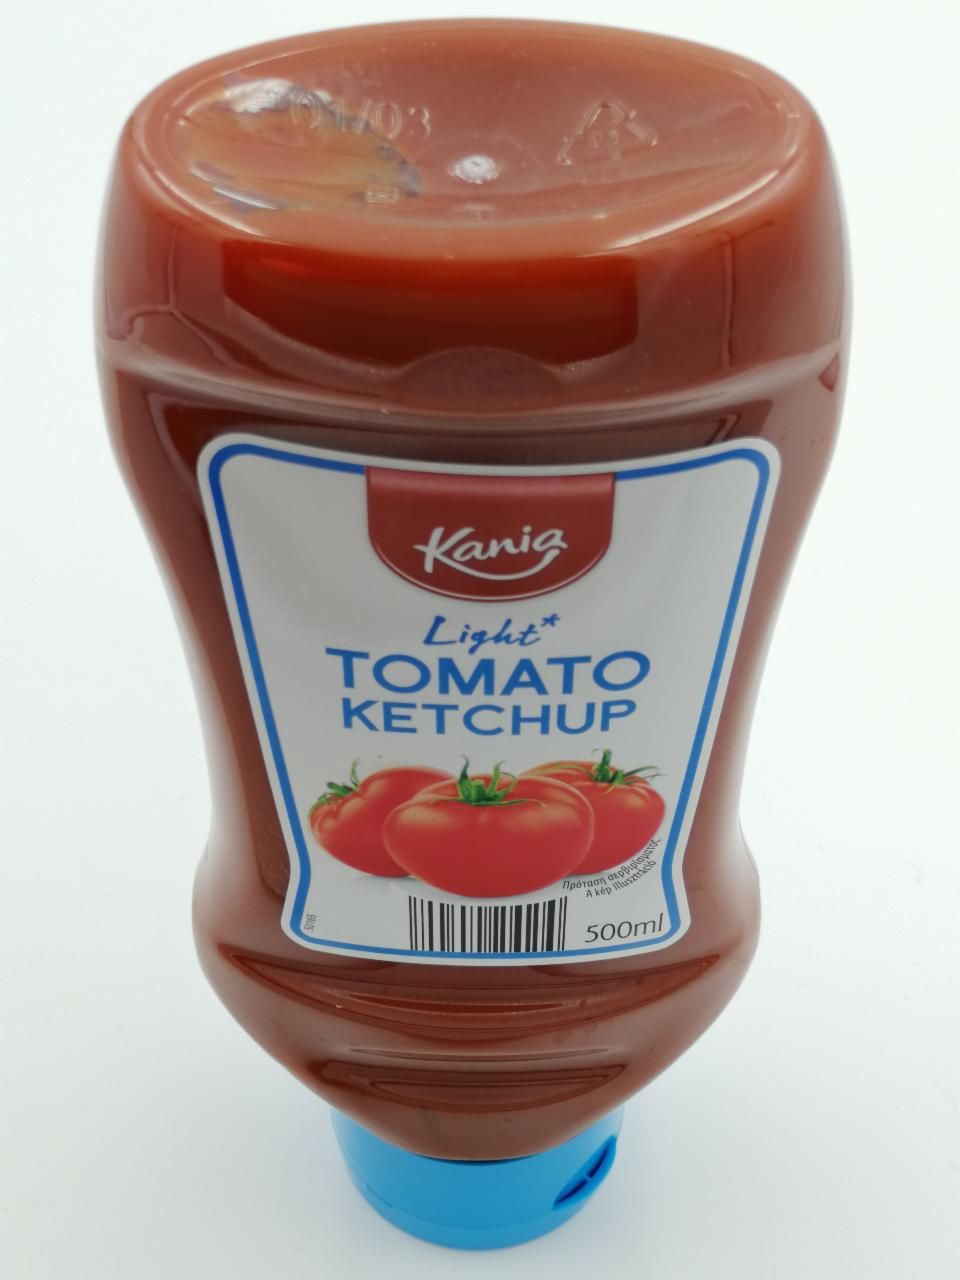 Fotografie - Tomaten ketchup Kania leicht